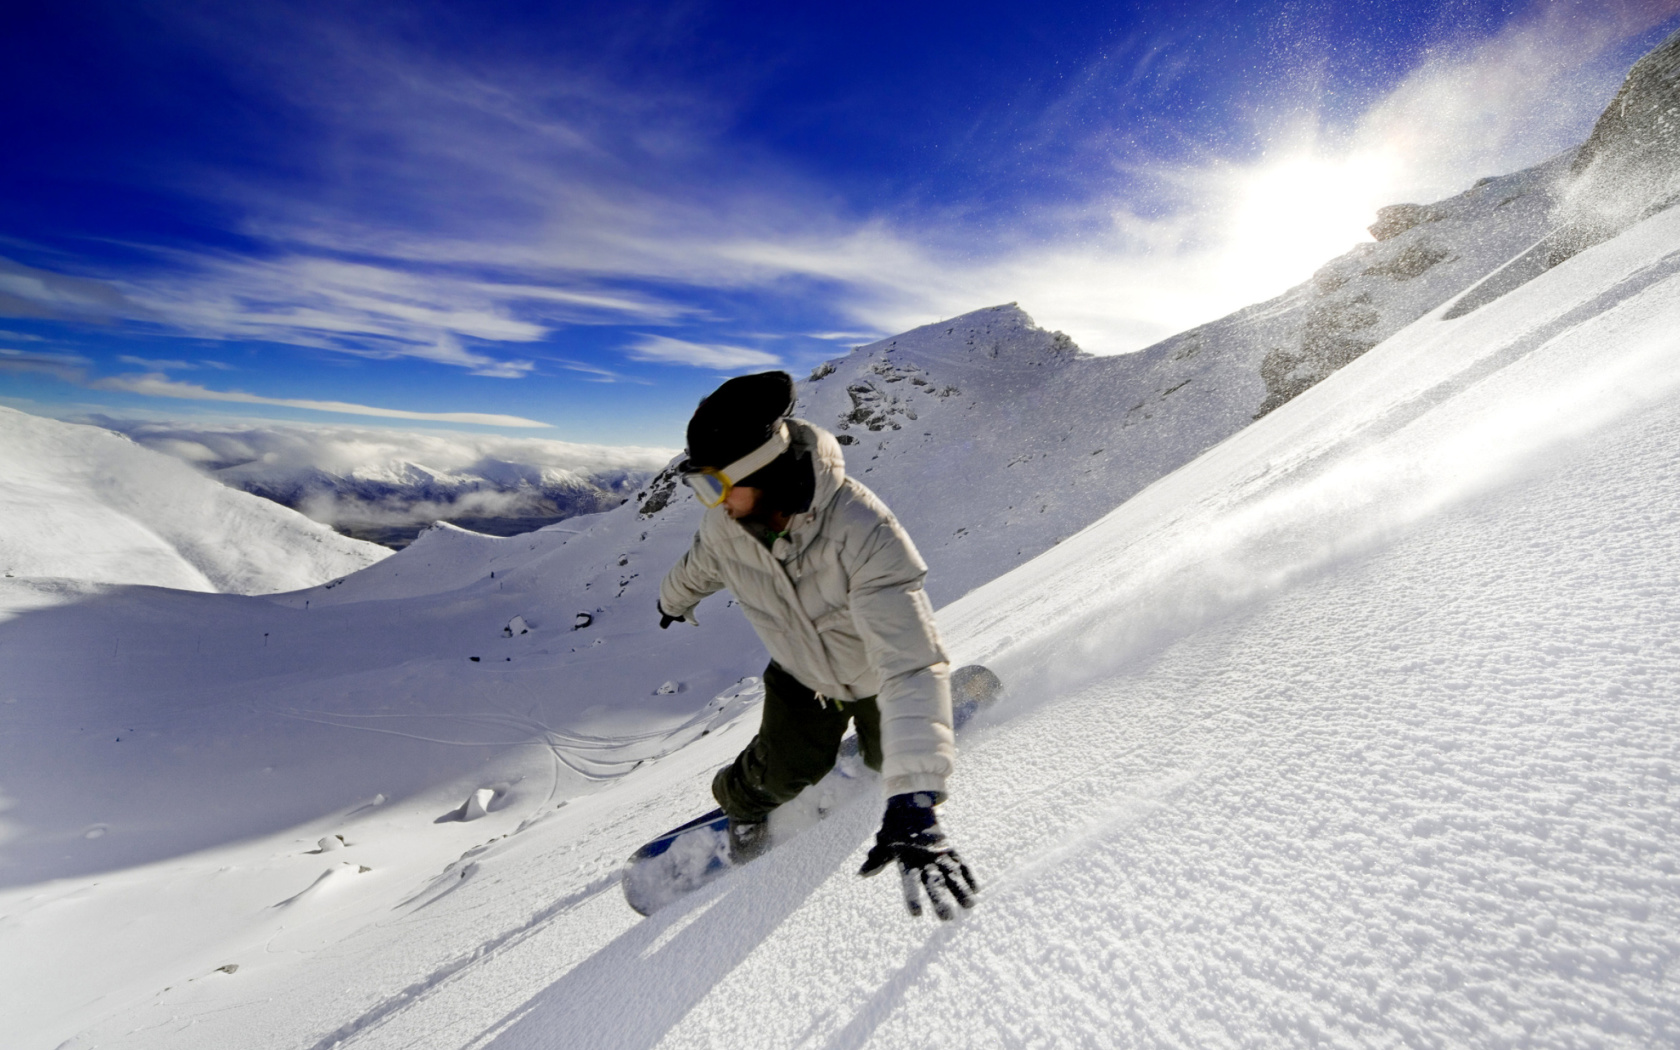 Outdoor activities as Snowboarding wallpaper 1680x1050